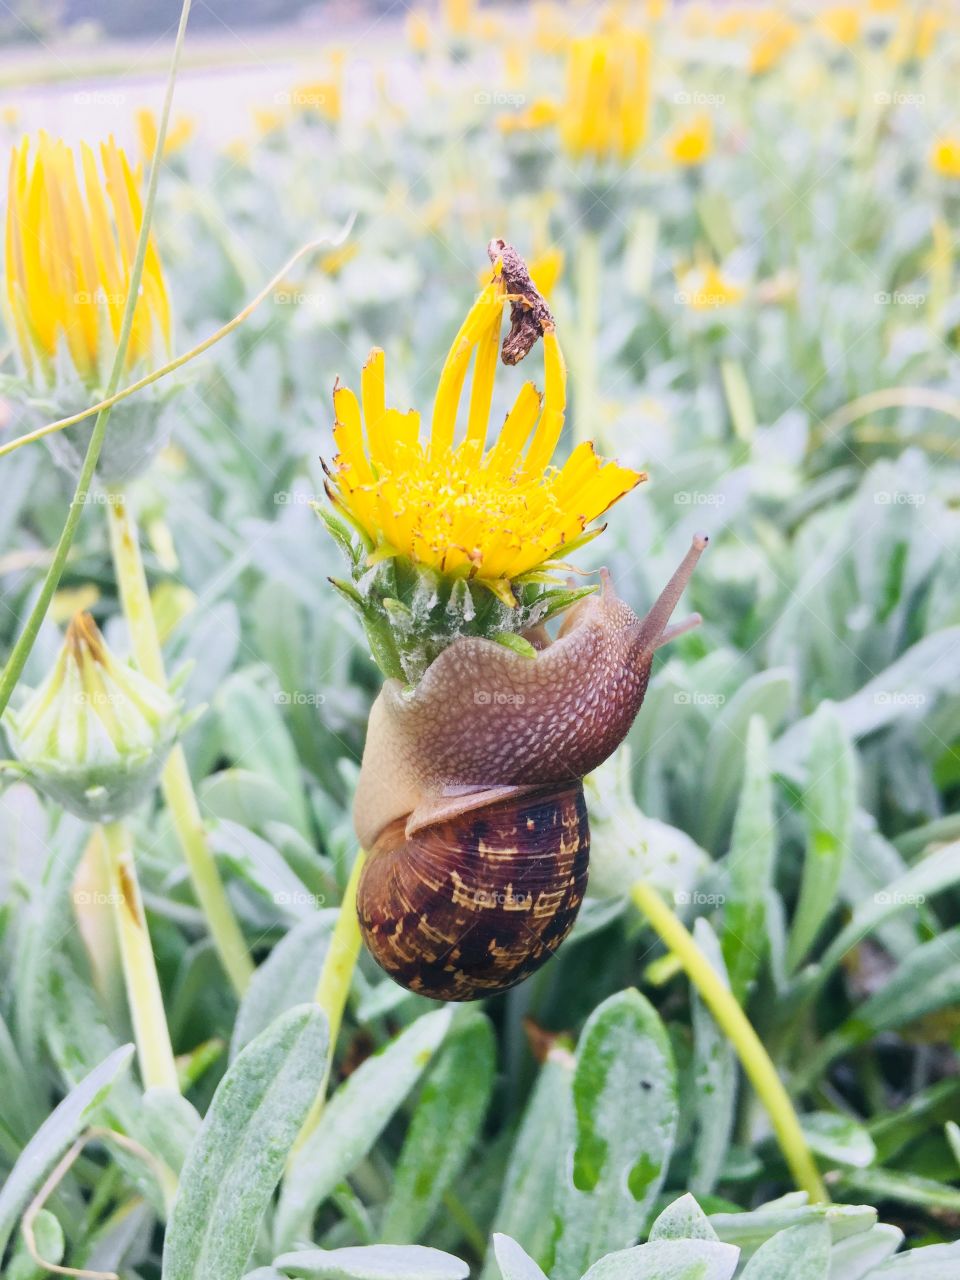 Snail embracing nature